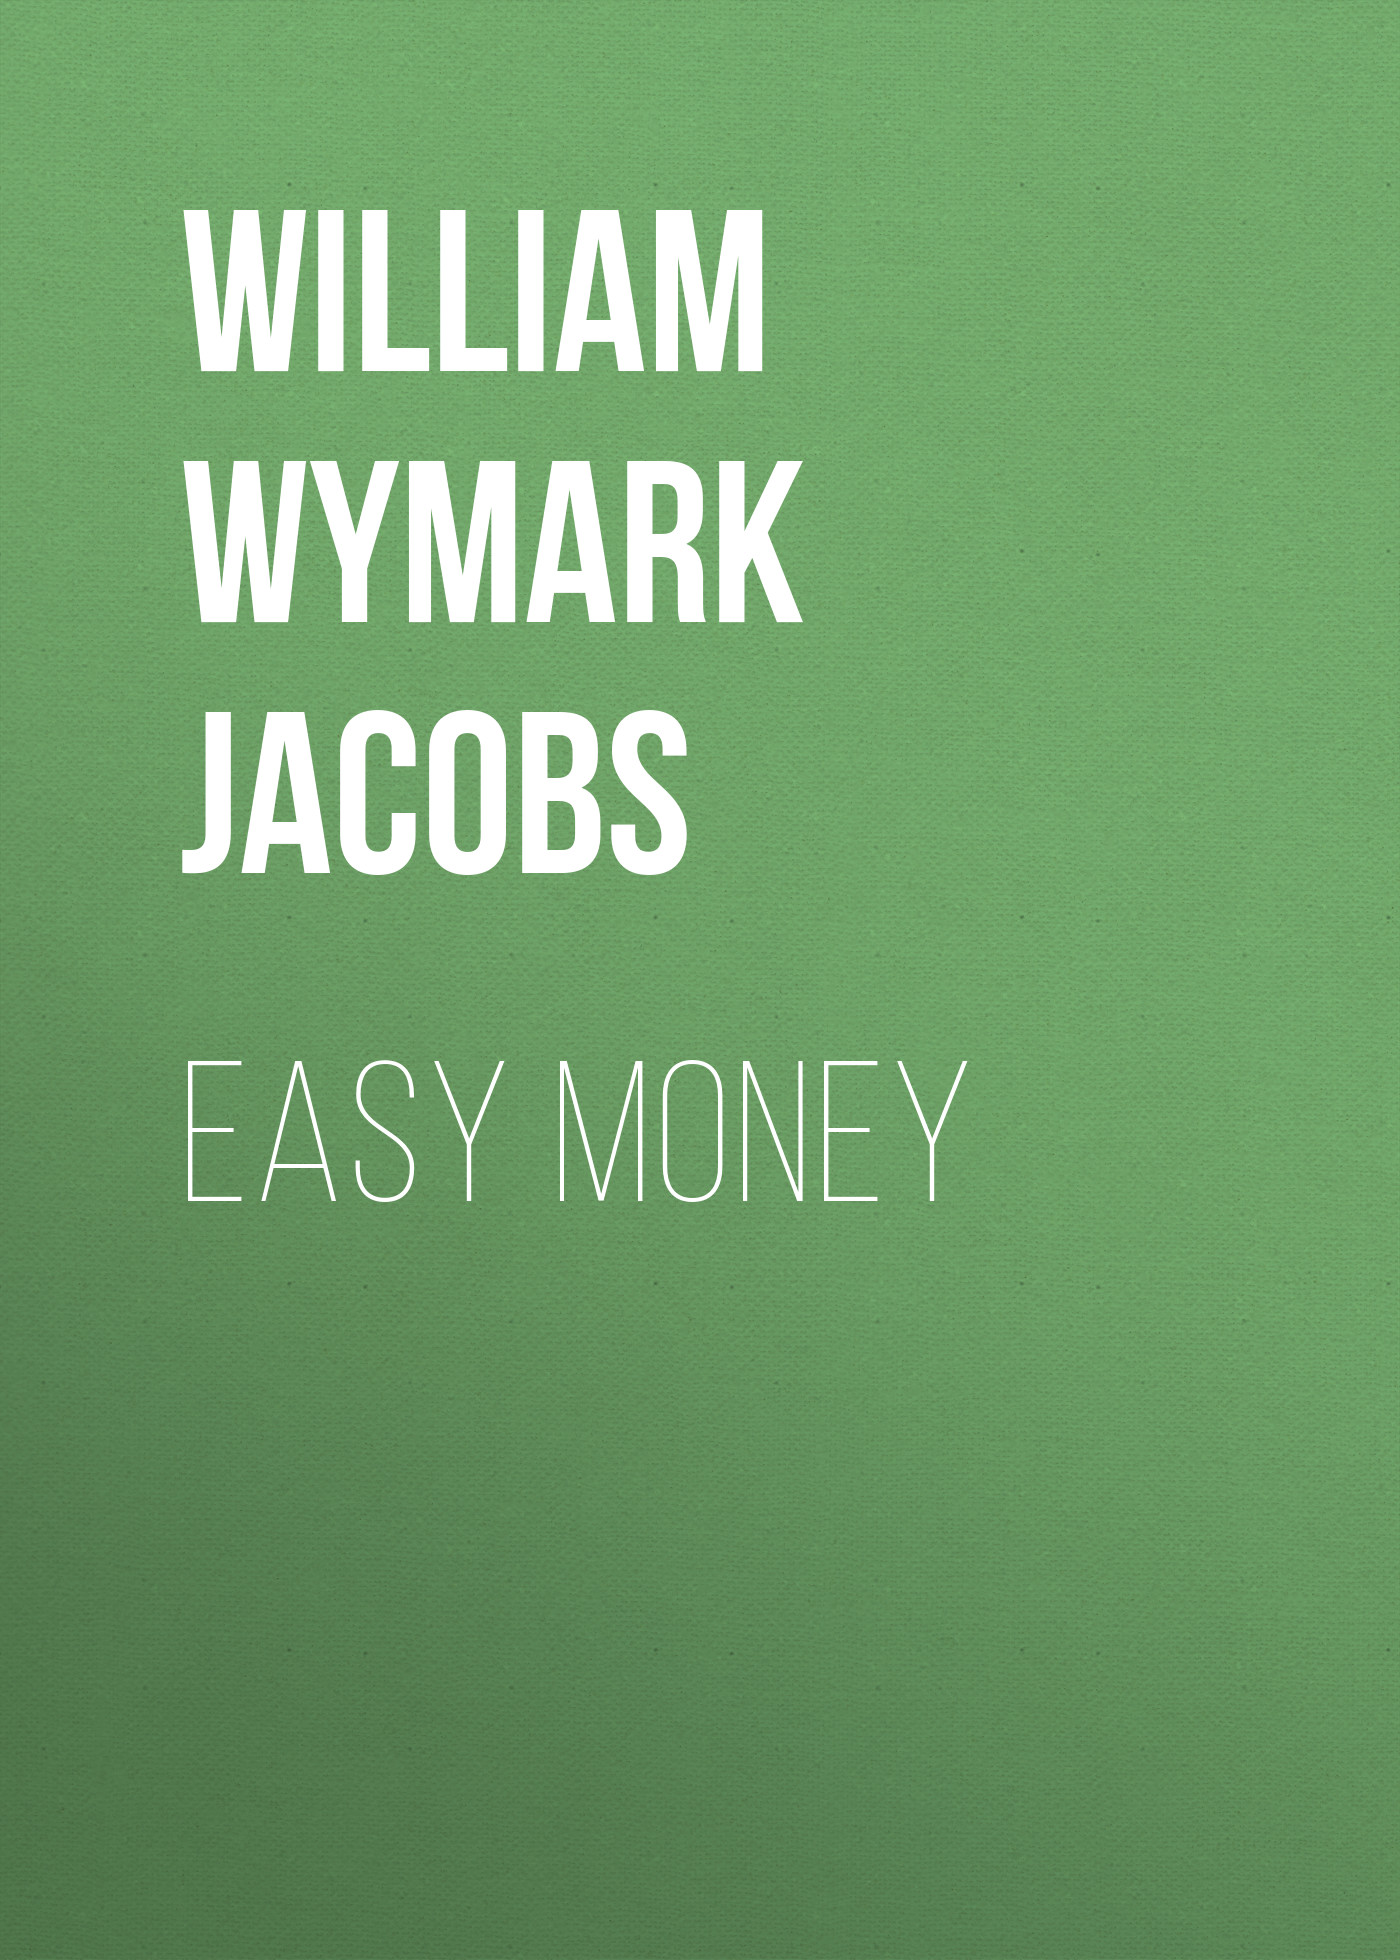 Книга Easy Money из серии , созданная William Wymark Jacobs, может относится к жанру Зарубежная классика, Зарубежная старинная литература. Стоимость электронной книги Easy Money с идентификатором 34842334 составляет 0 руб.